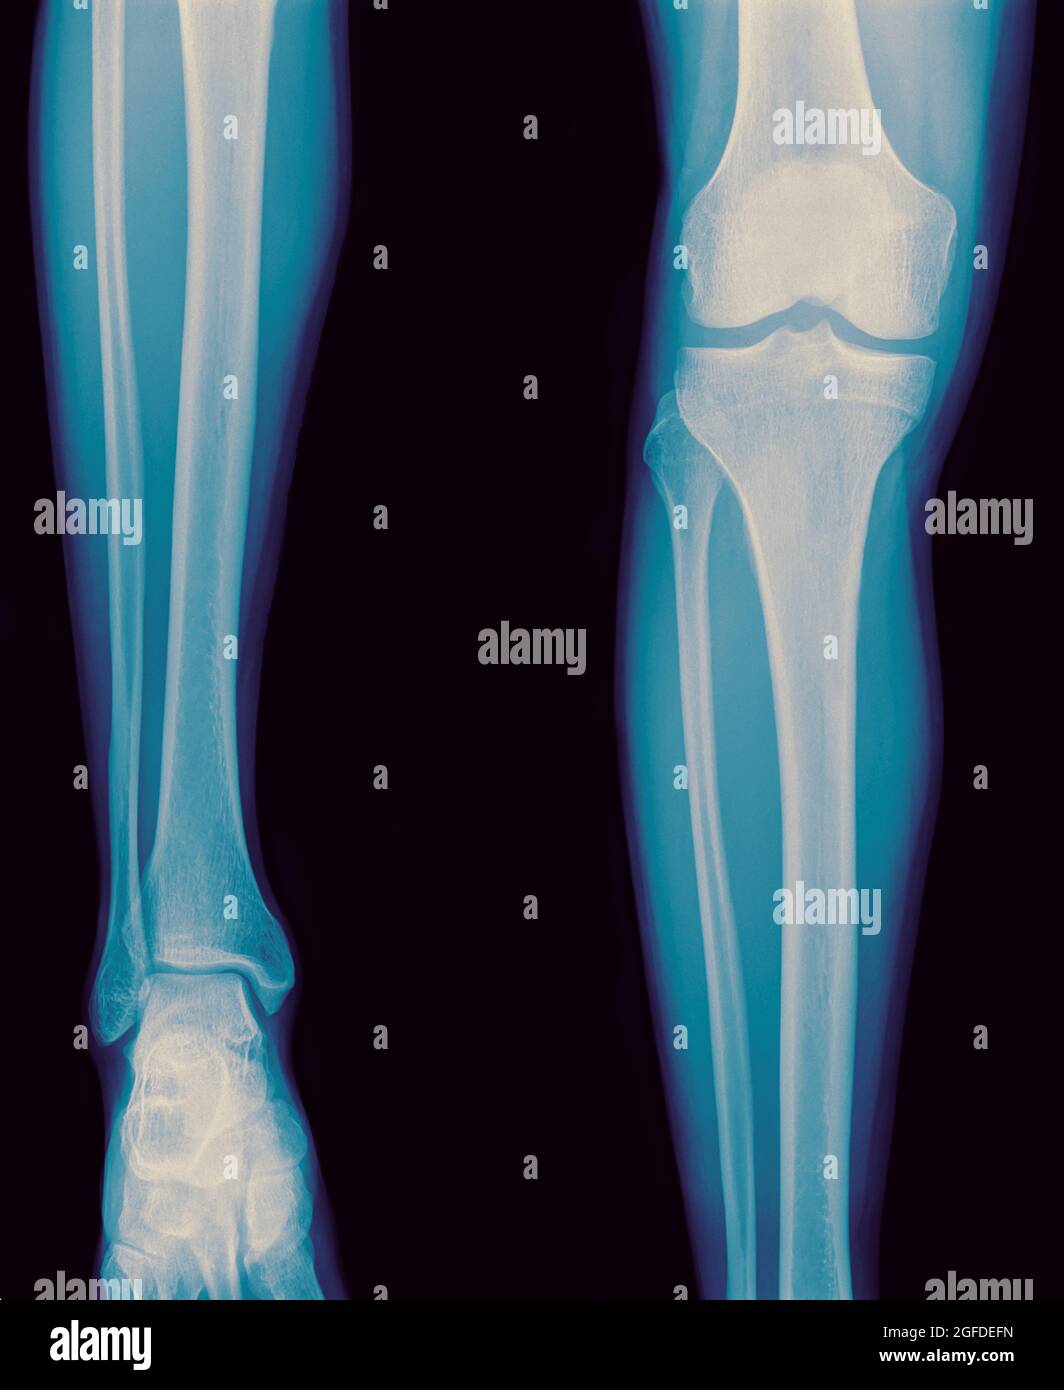 raggi x del ginocchio destro di un maschio di 42 anni non sono state mostrate fratture o lussazioni Foto Stock